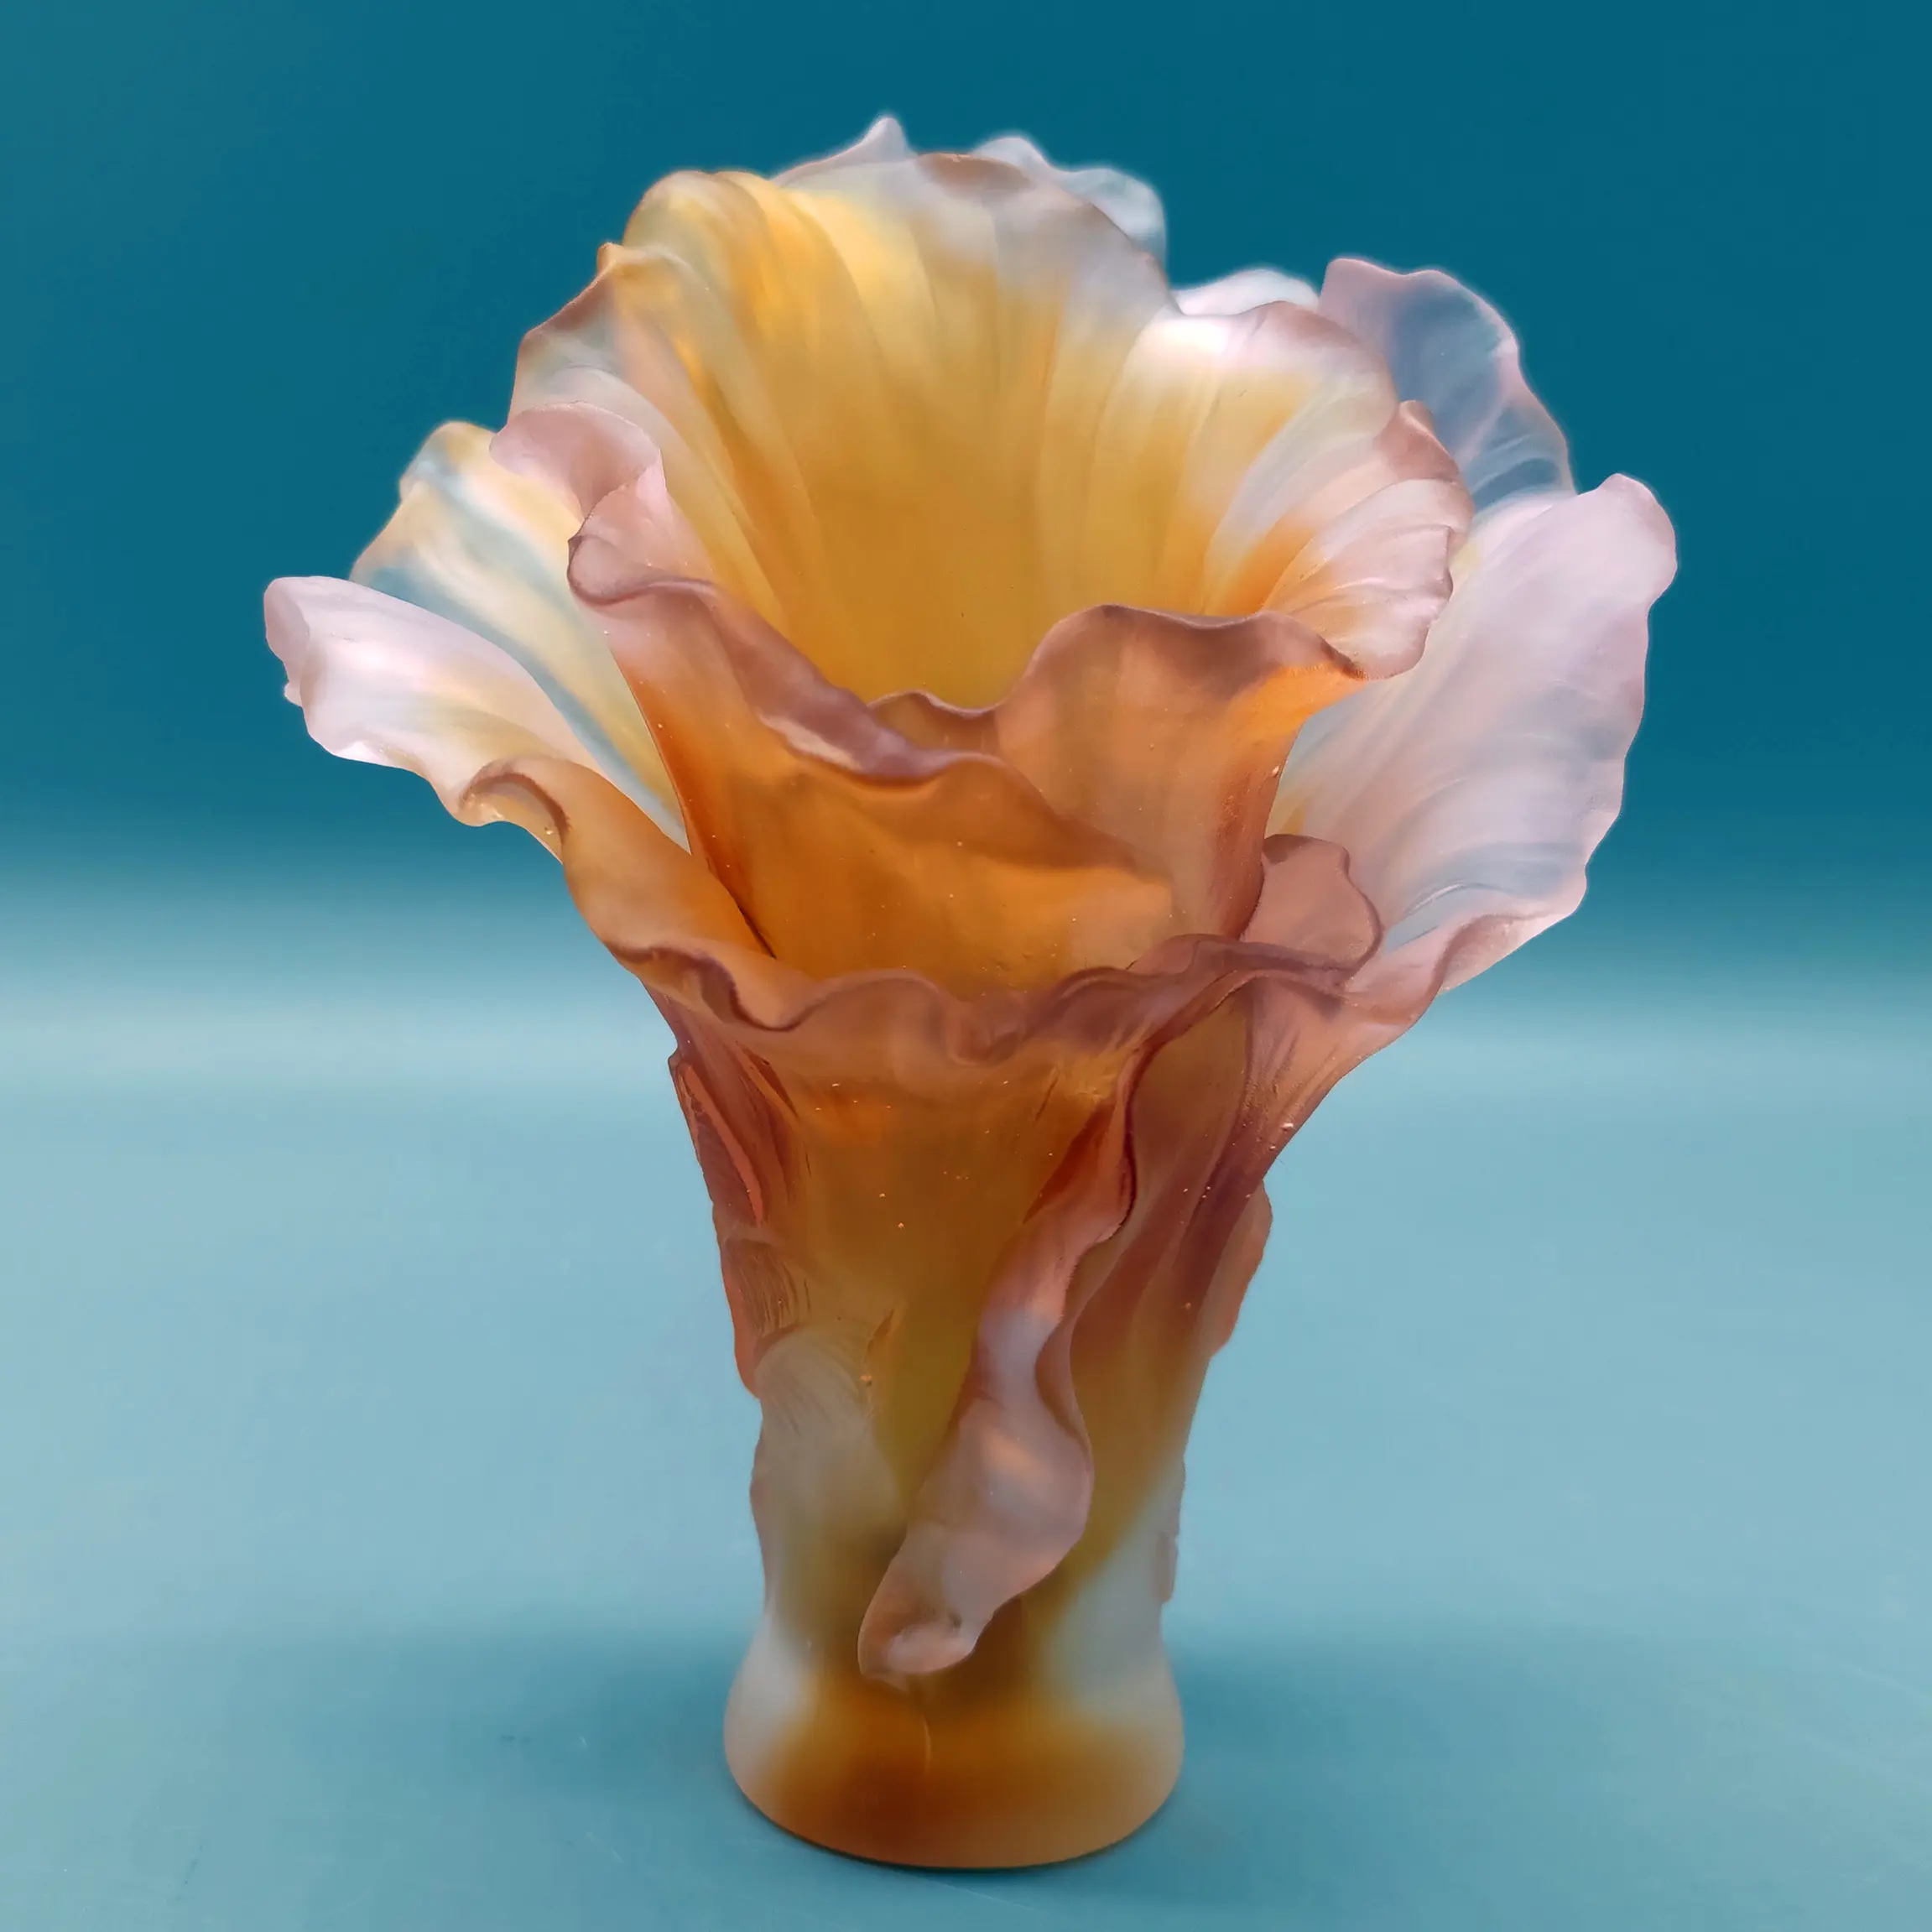 Vaso de cristal estilo filha artesanal